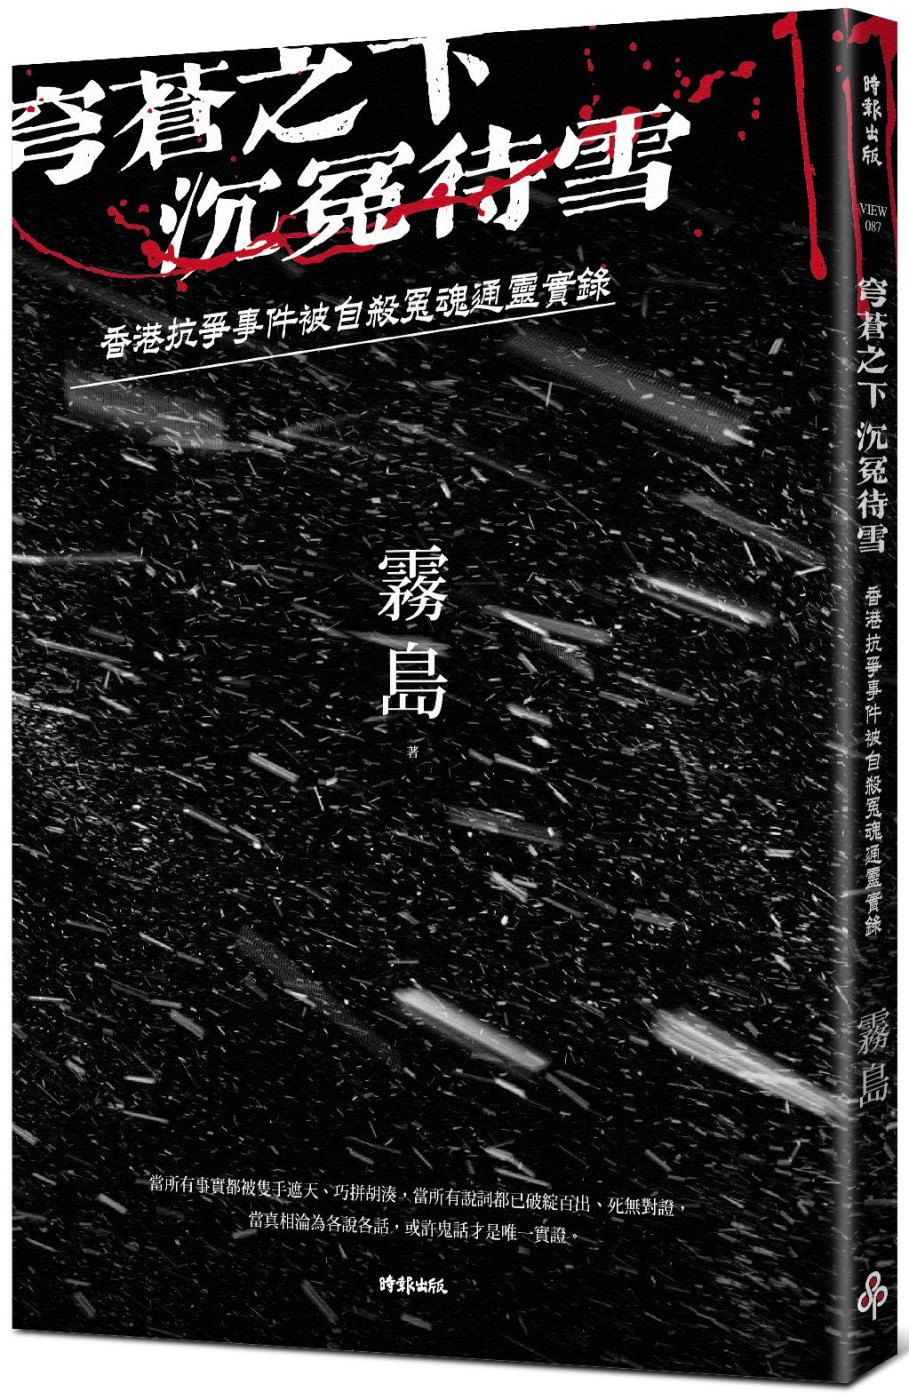 穹蒼之下，沉冤待雪：香港抗爭事件被自殺冤魂通靈實錄